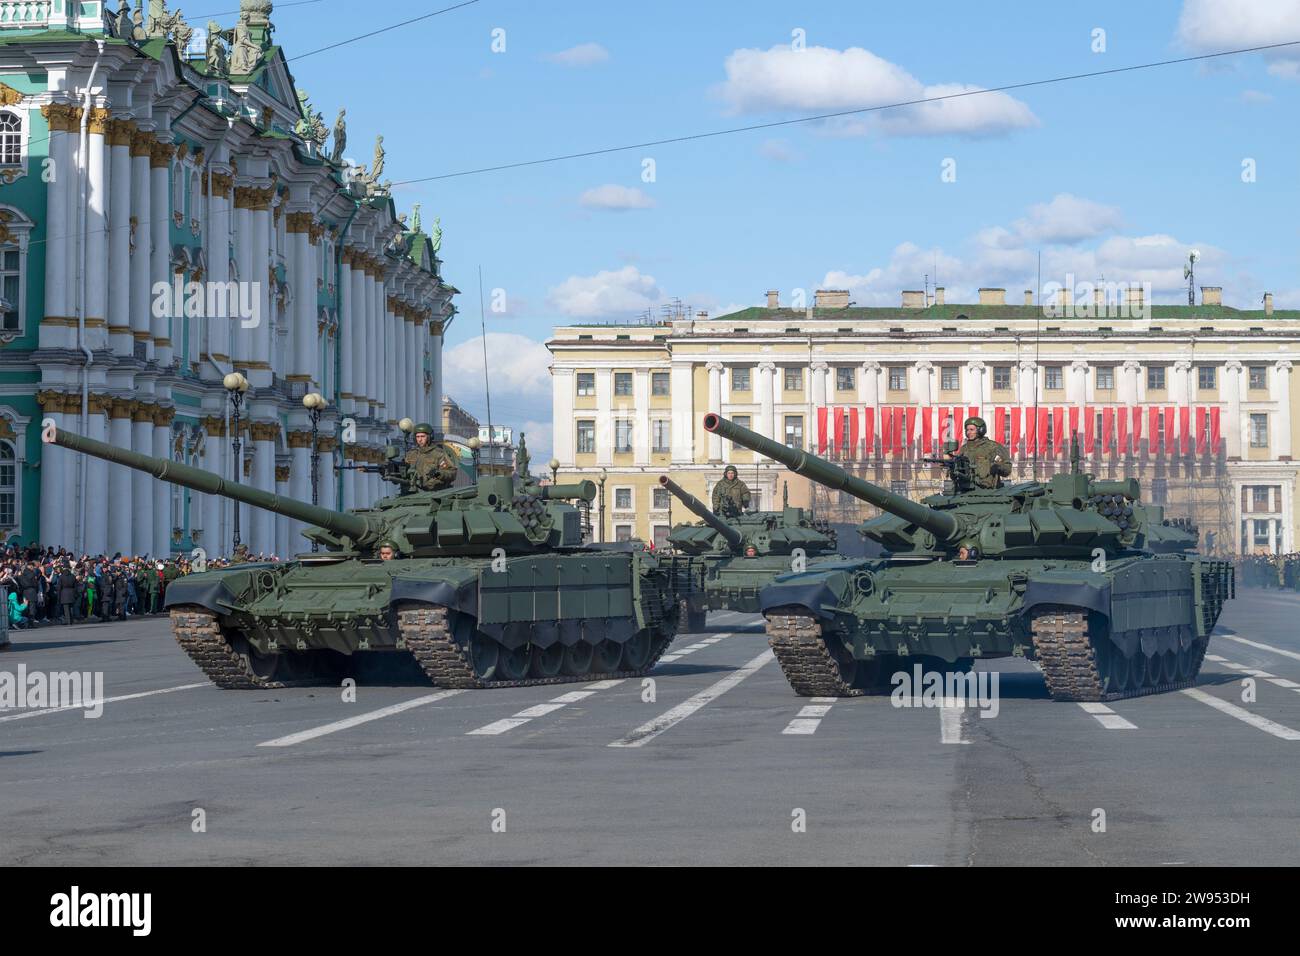 PÉTERSBOURG, RUSSIE - 28 AVRIL 2022 : chars russes T-72B3 sur la place du Palais. Fragment de la répétition du défilé militaire en l'honneur du jour de la victoire Banque D'Images